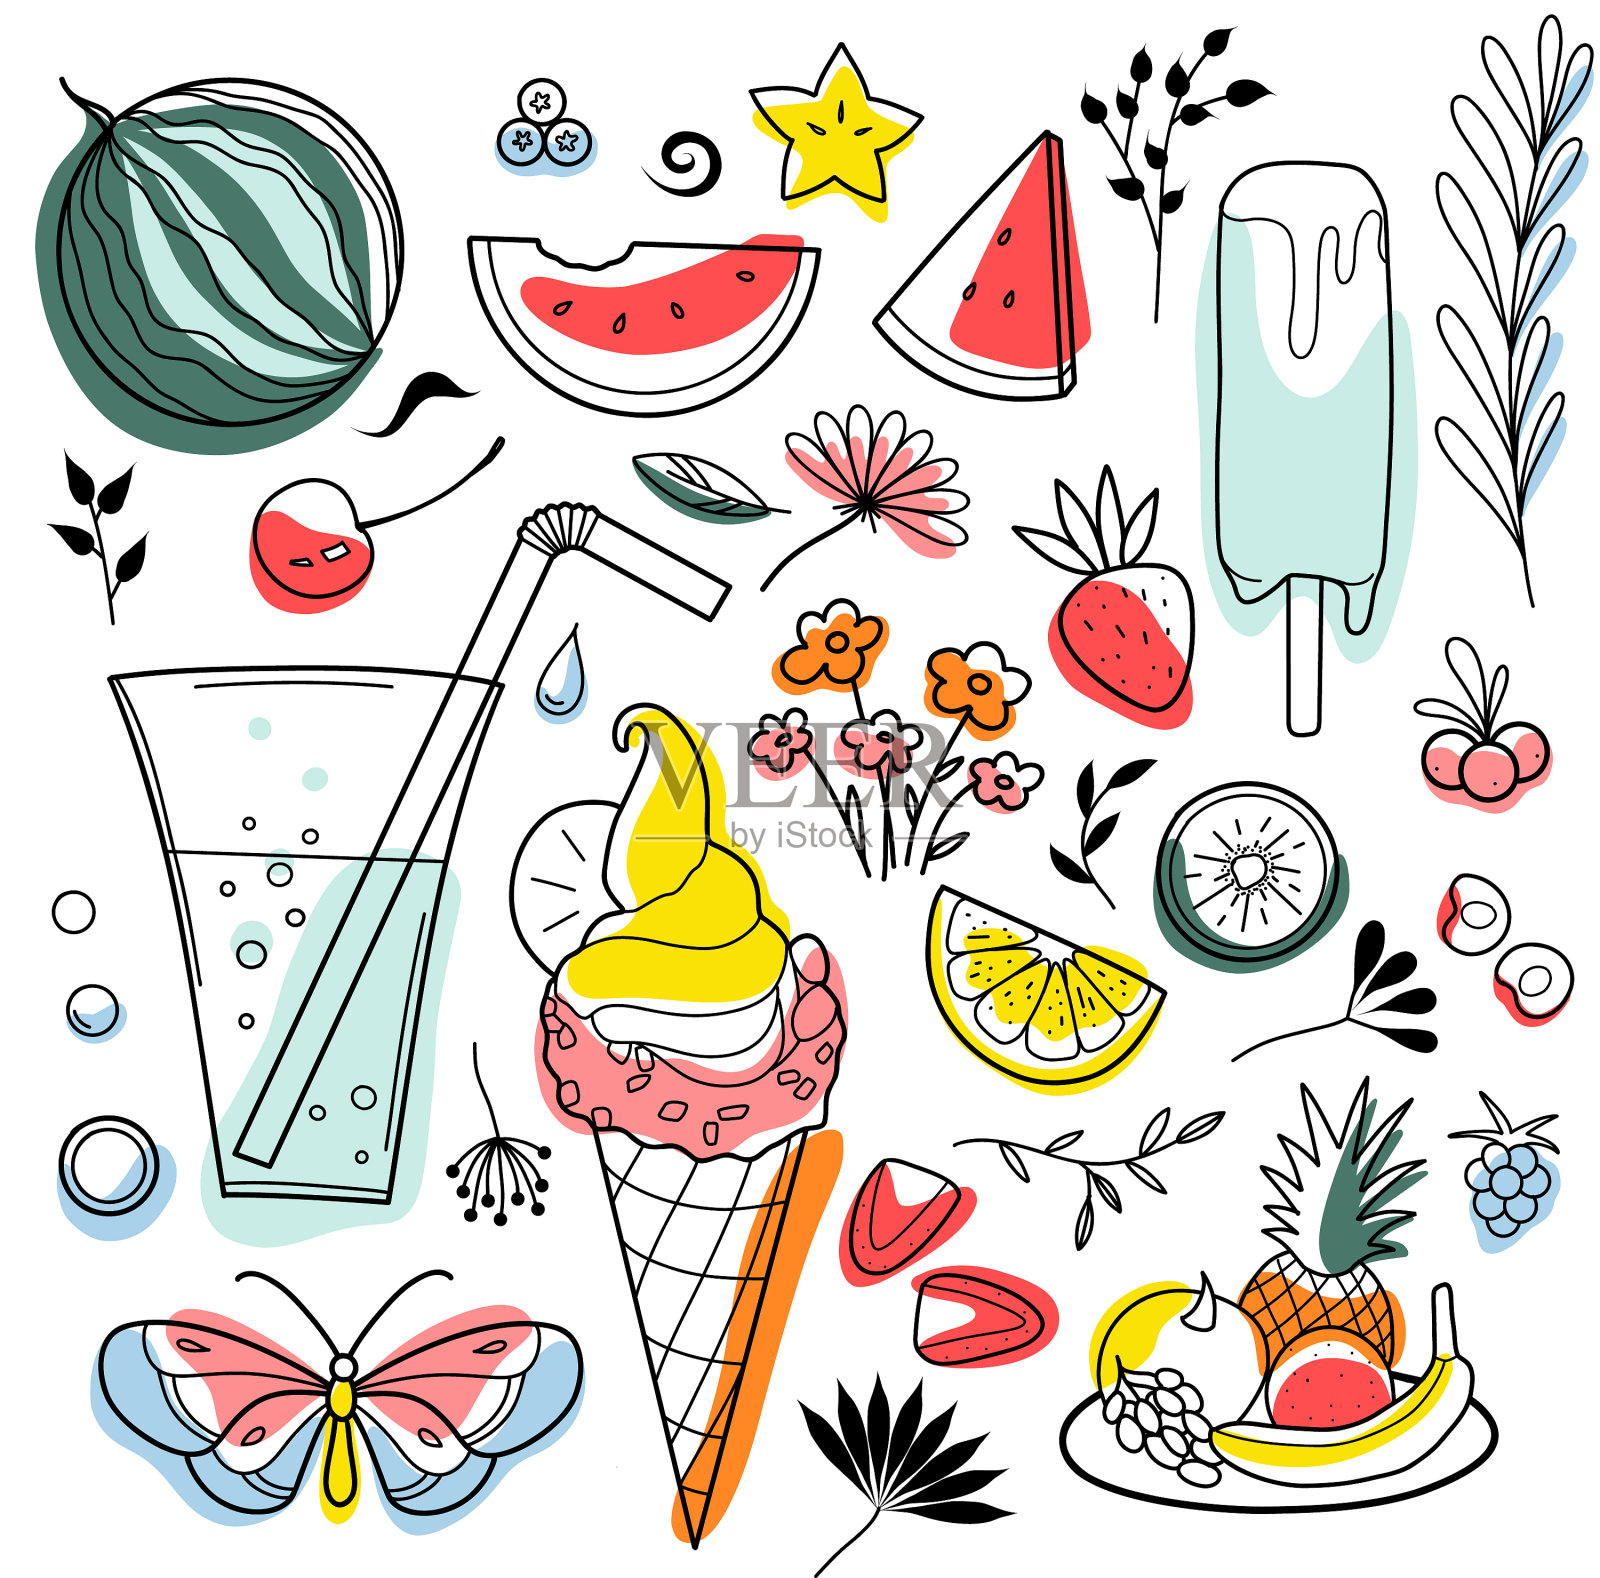 轮廓和斑点画一套夏天的糖果插画图片素材